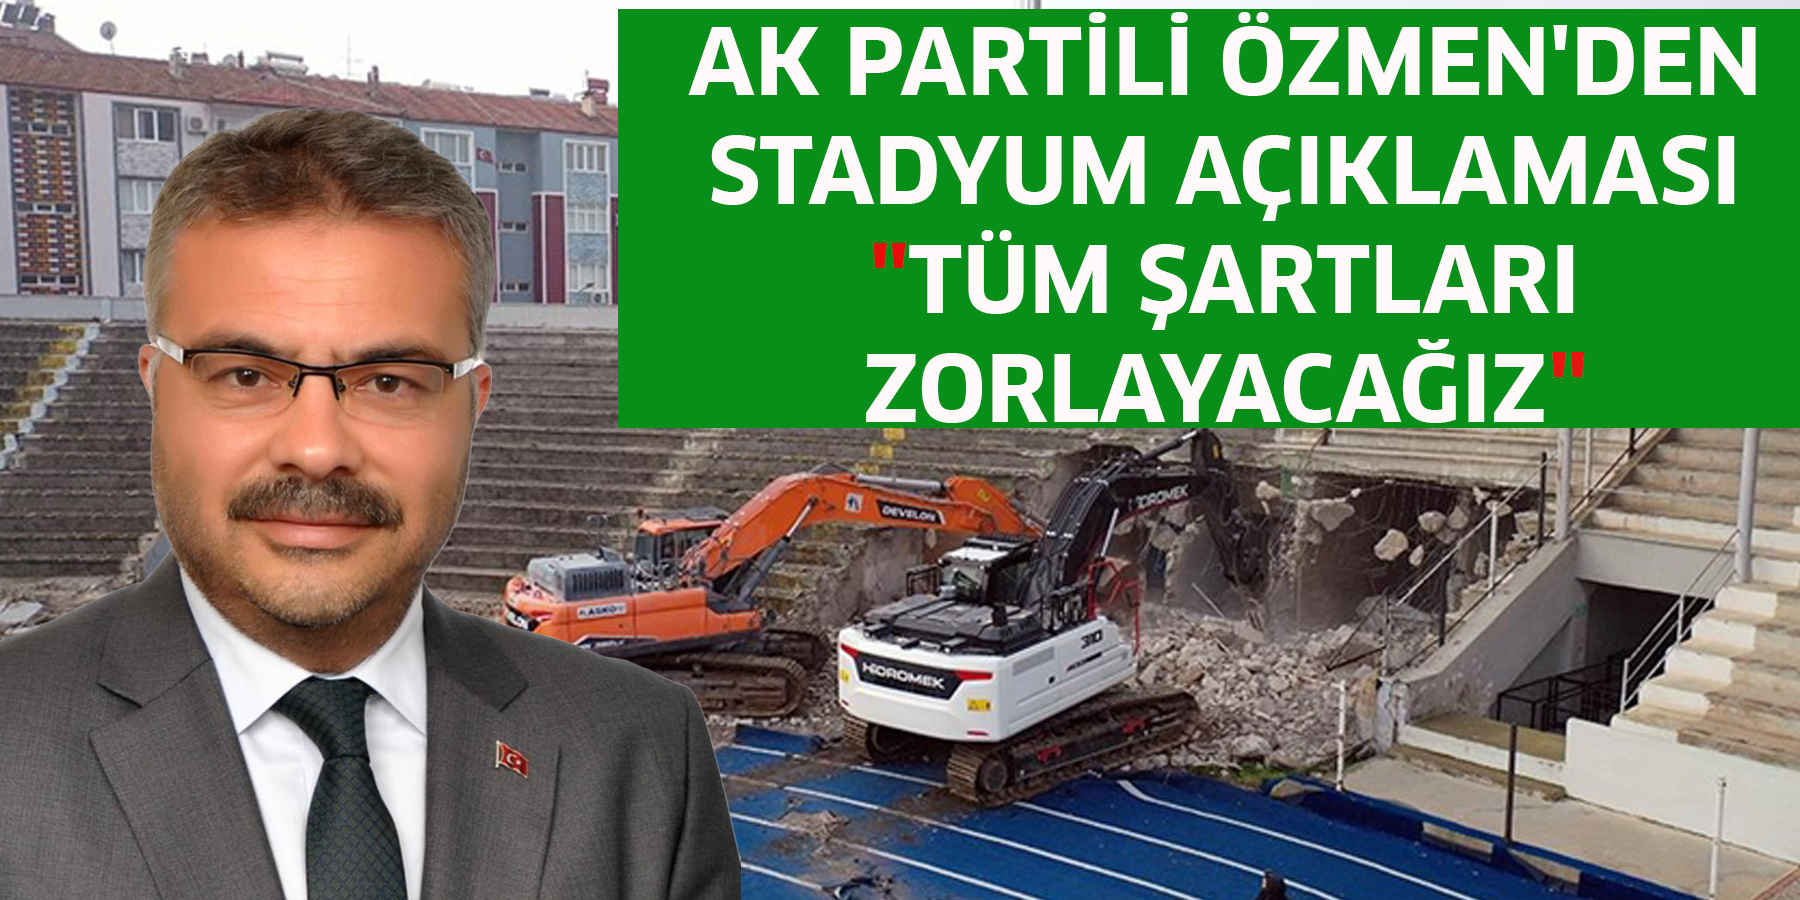 AK Partili Özmen'den stadyum açıklaması "Tüm şartları zorlayacağız"